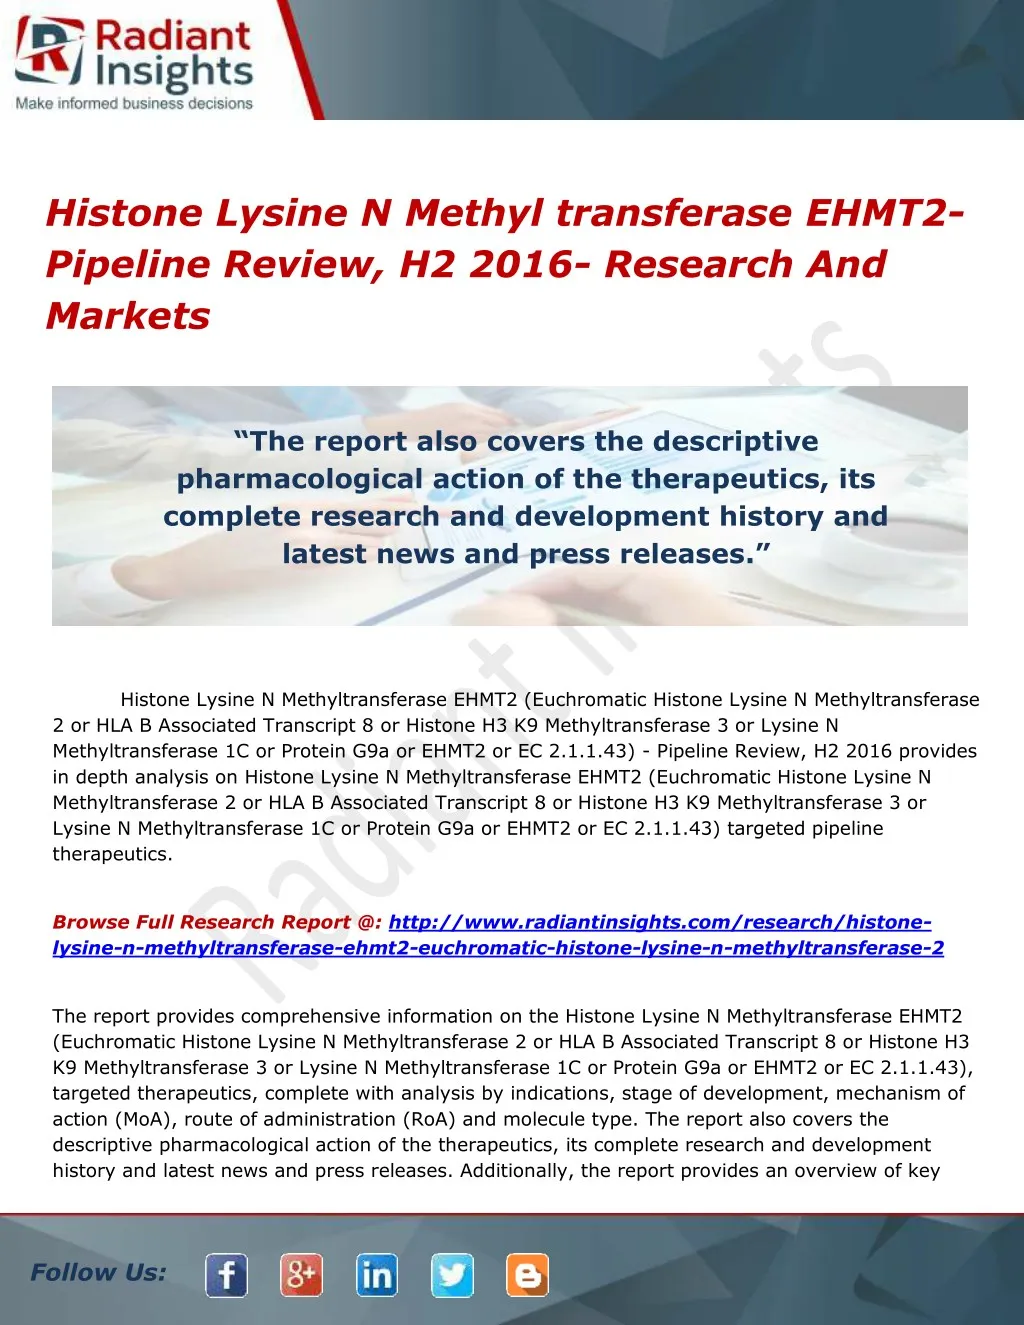 histone lysine n methyl transferase ehmt2